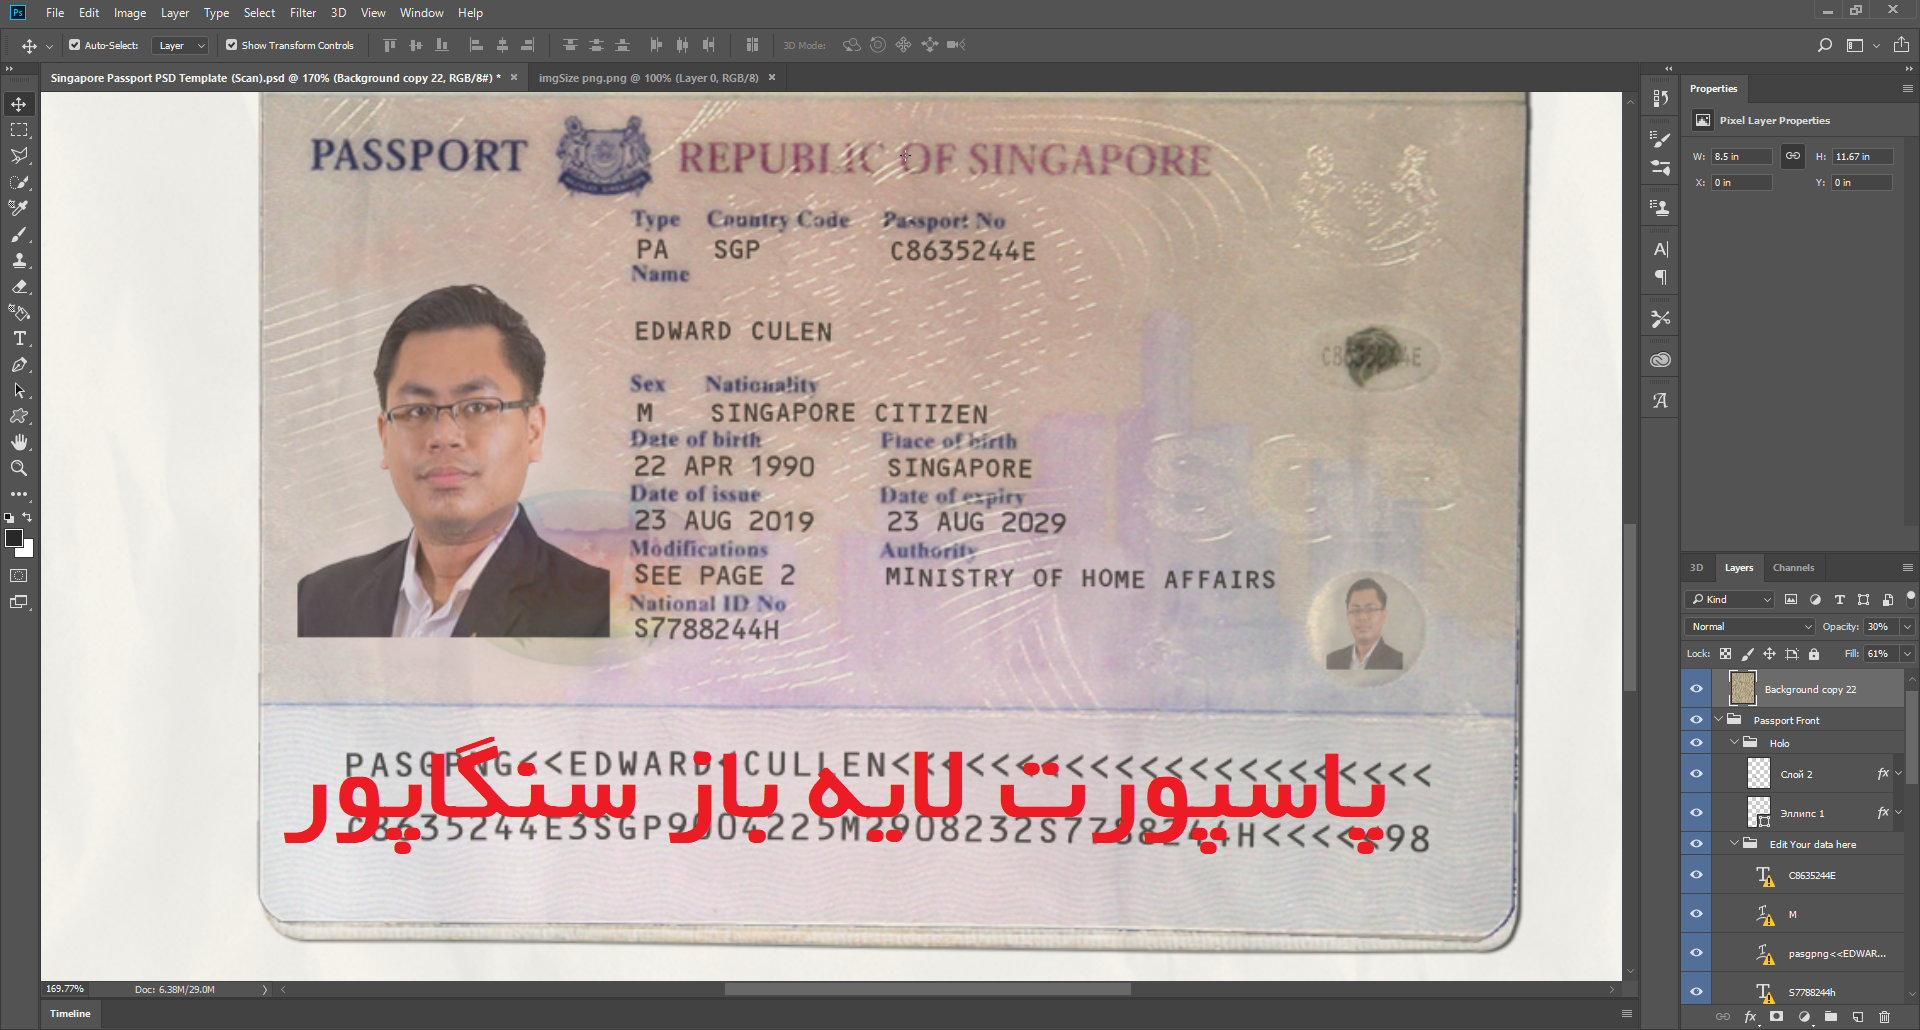 دانلود فایل لایه باز پاسپورت سنگاپور Singapore قابل ویرایش با فتوشاپ psd کارت شناسایی و قبض برای تایید آدرس